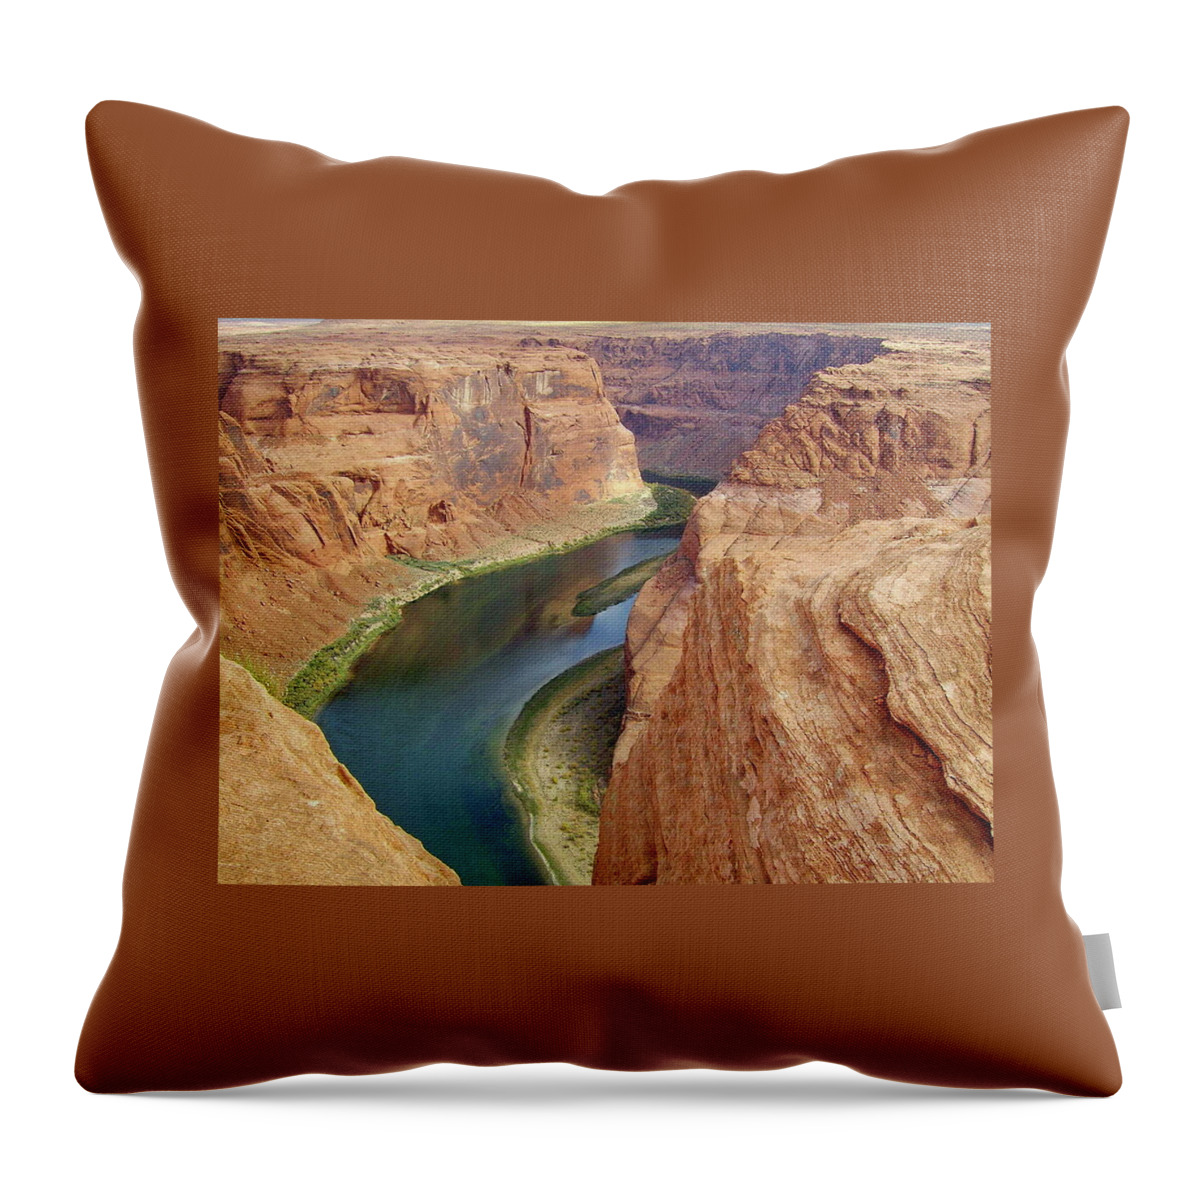 Colorado River Throw Pillow featuring the photograph Colorado River Horseshoe Bend by Lyuba Filatova